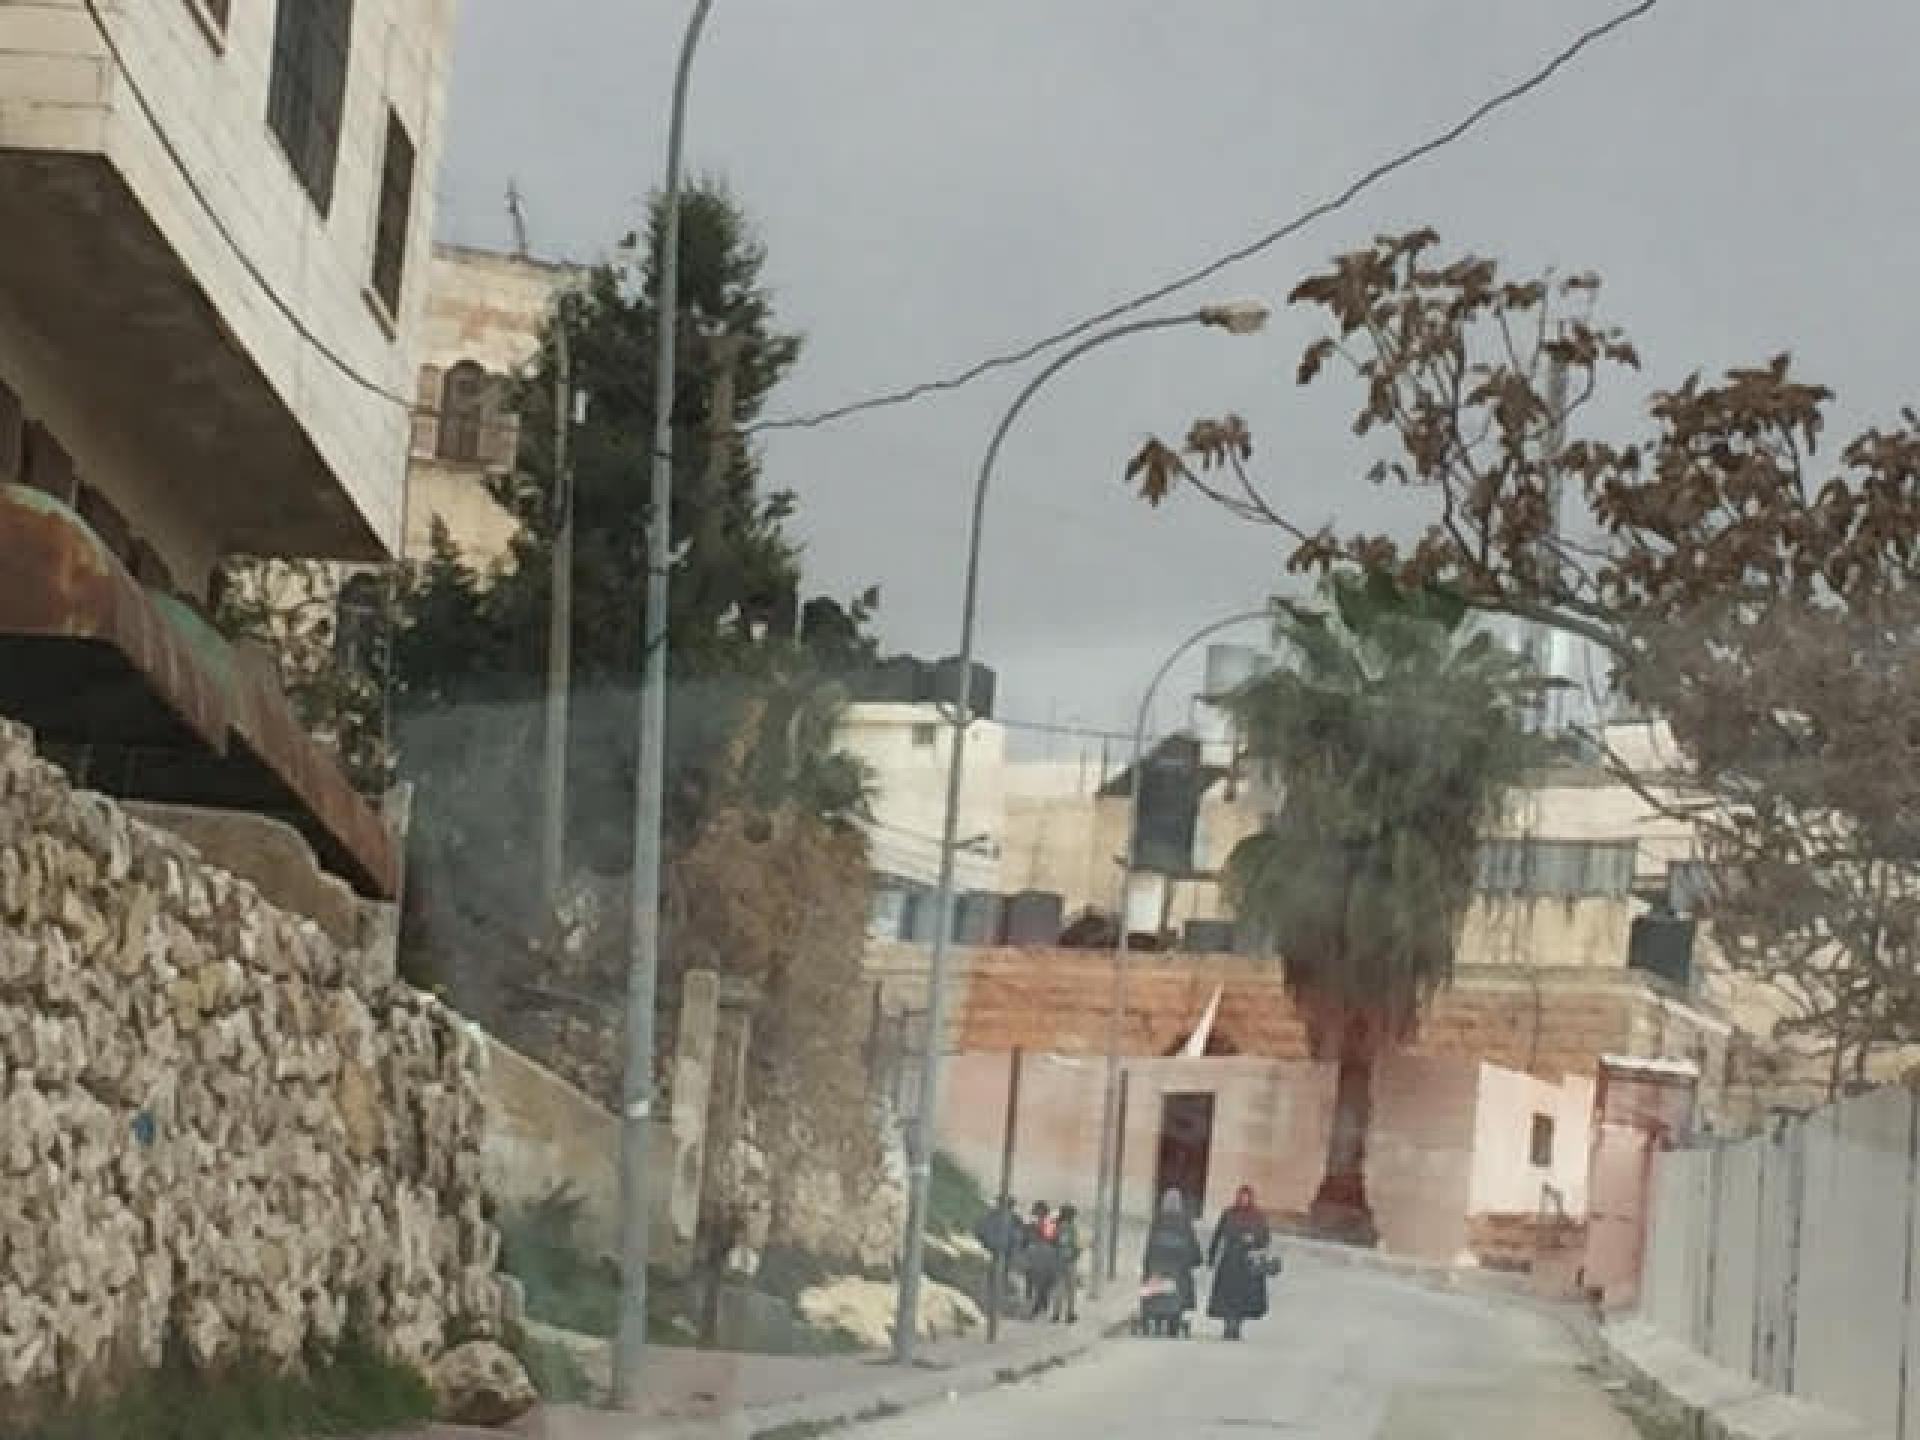 שכונת קפישה, לפלסטינים עדיין אסור להיכנס עם כלי רכב, לכן הולכים ברגל